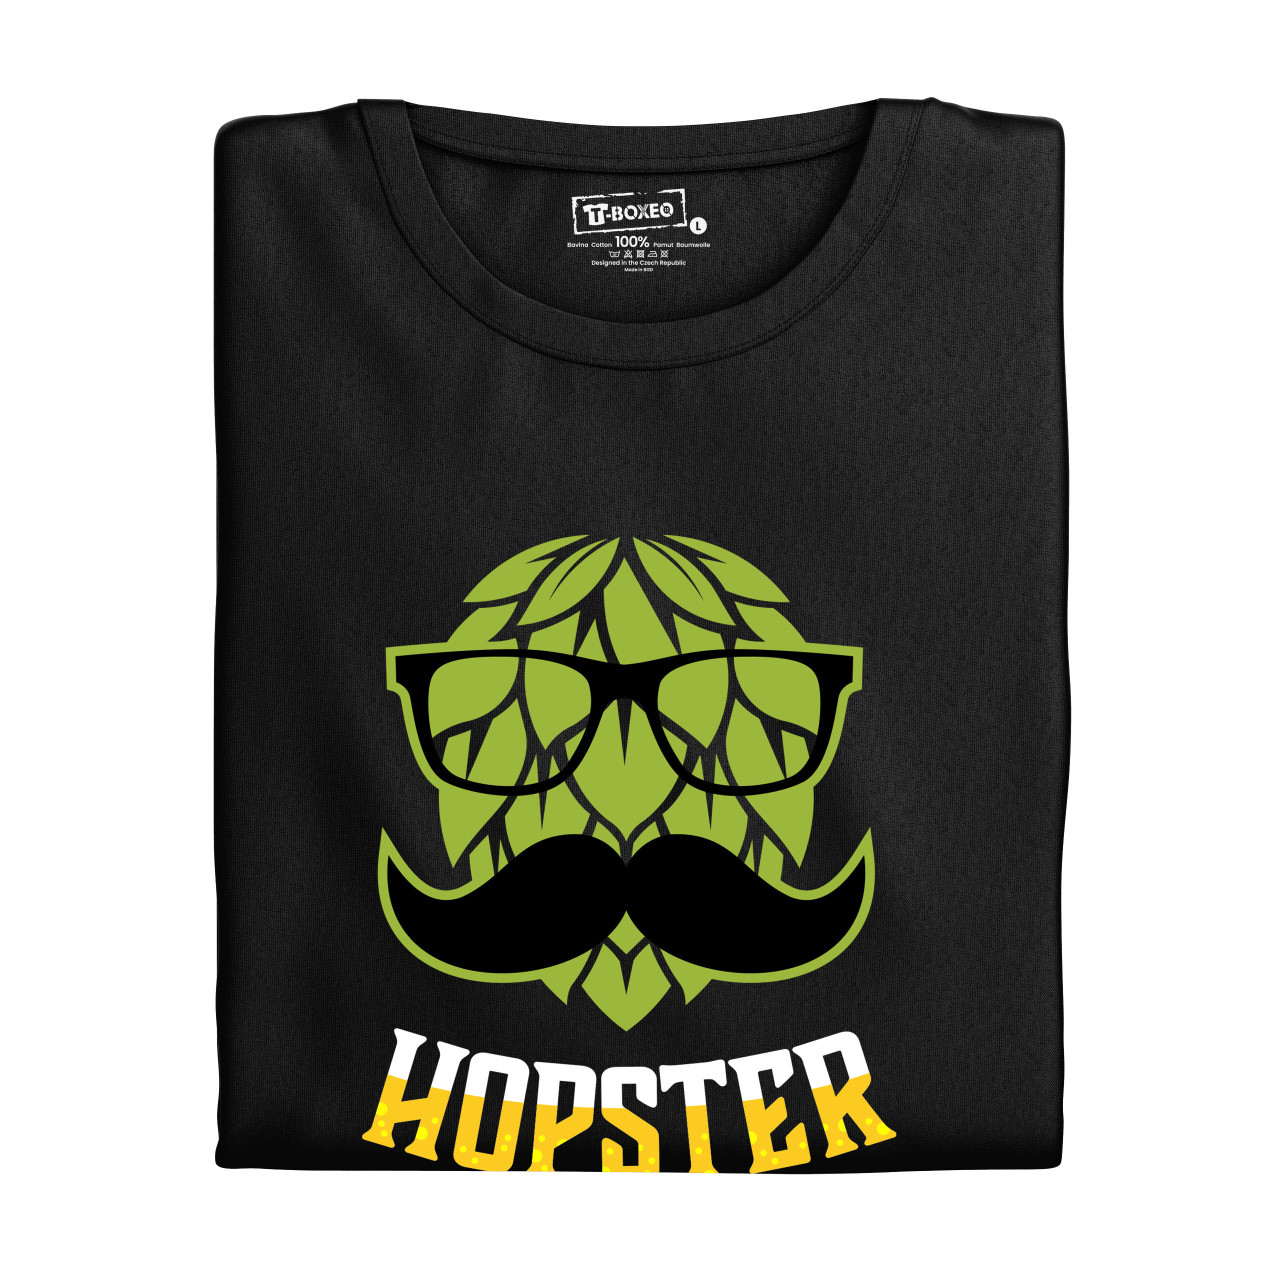 Pánské tričko s potiskem “Hopster”